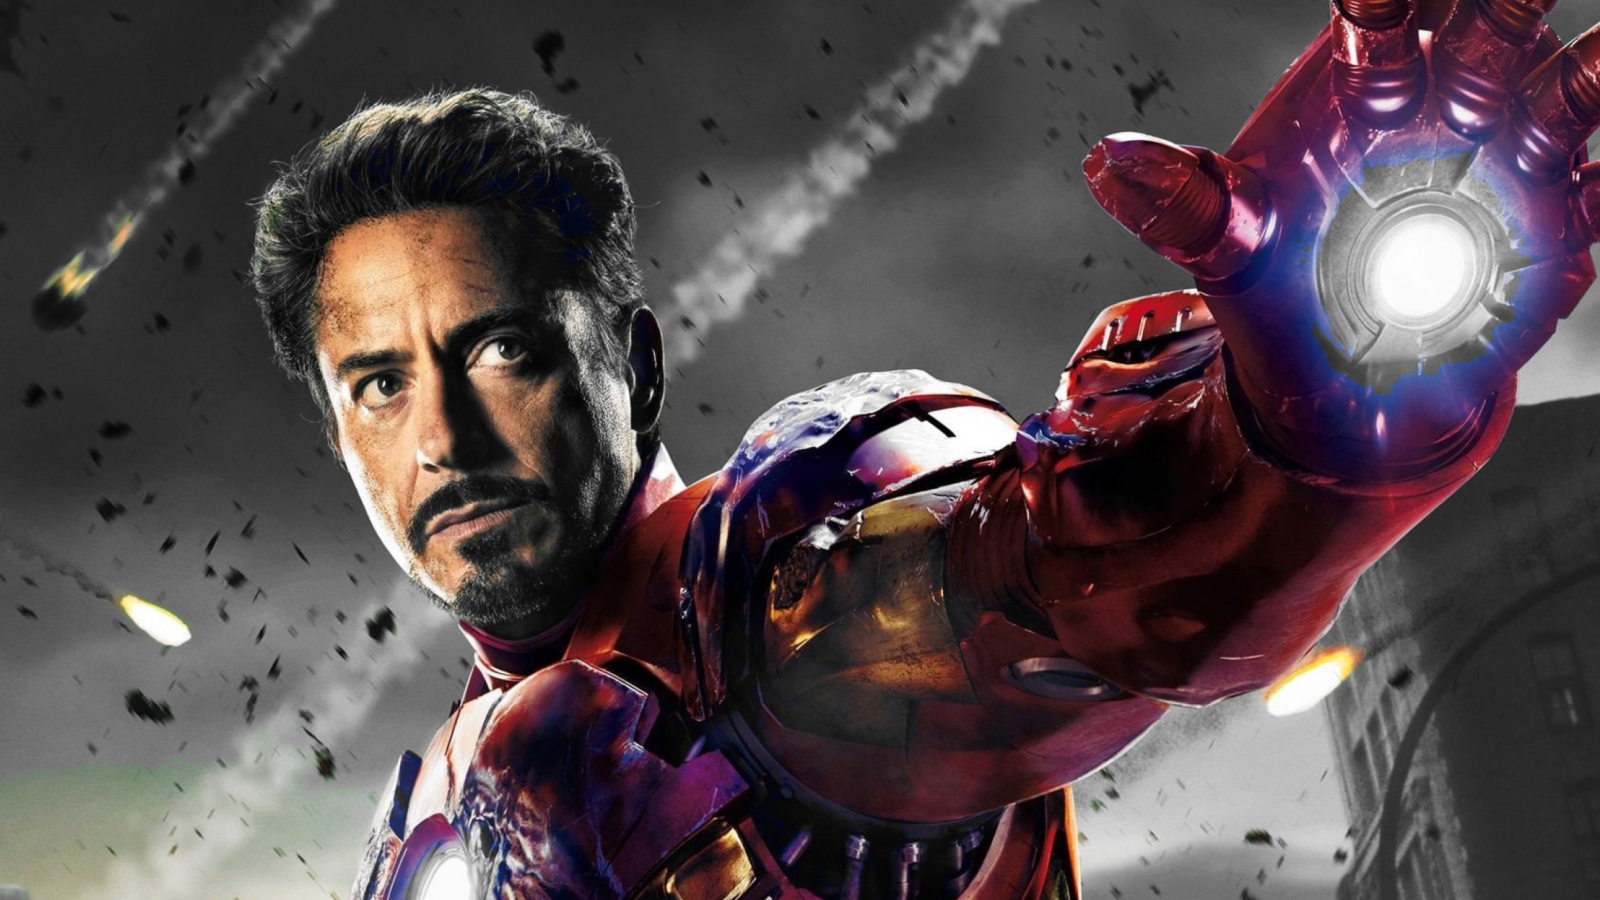 Iron Man - The Avengers 2012 wallpaper 1600x900